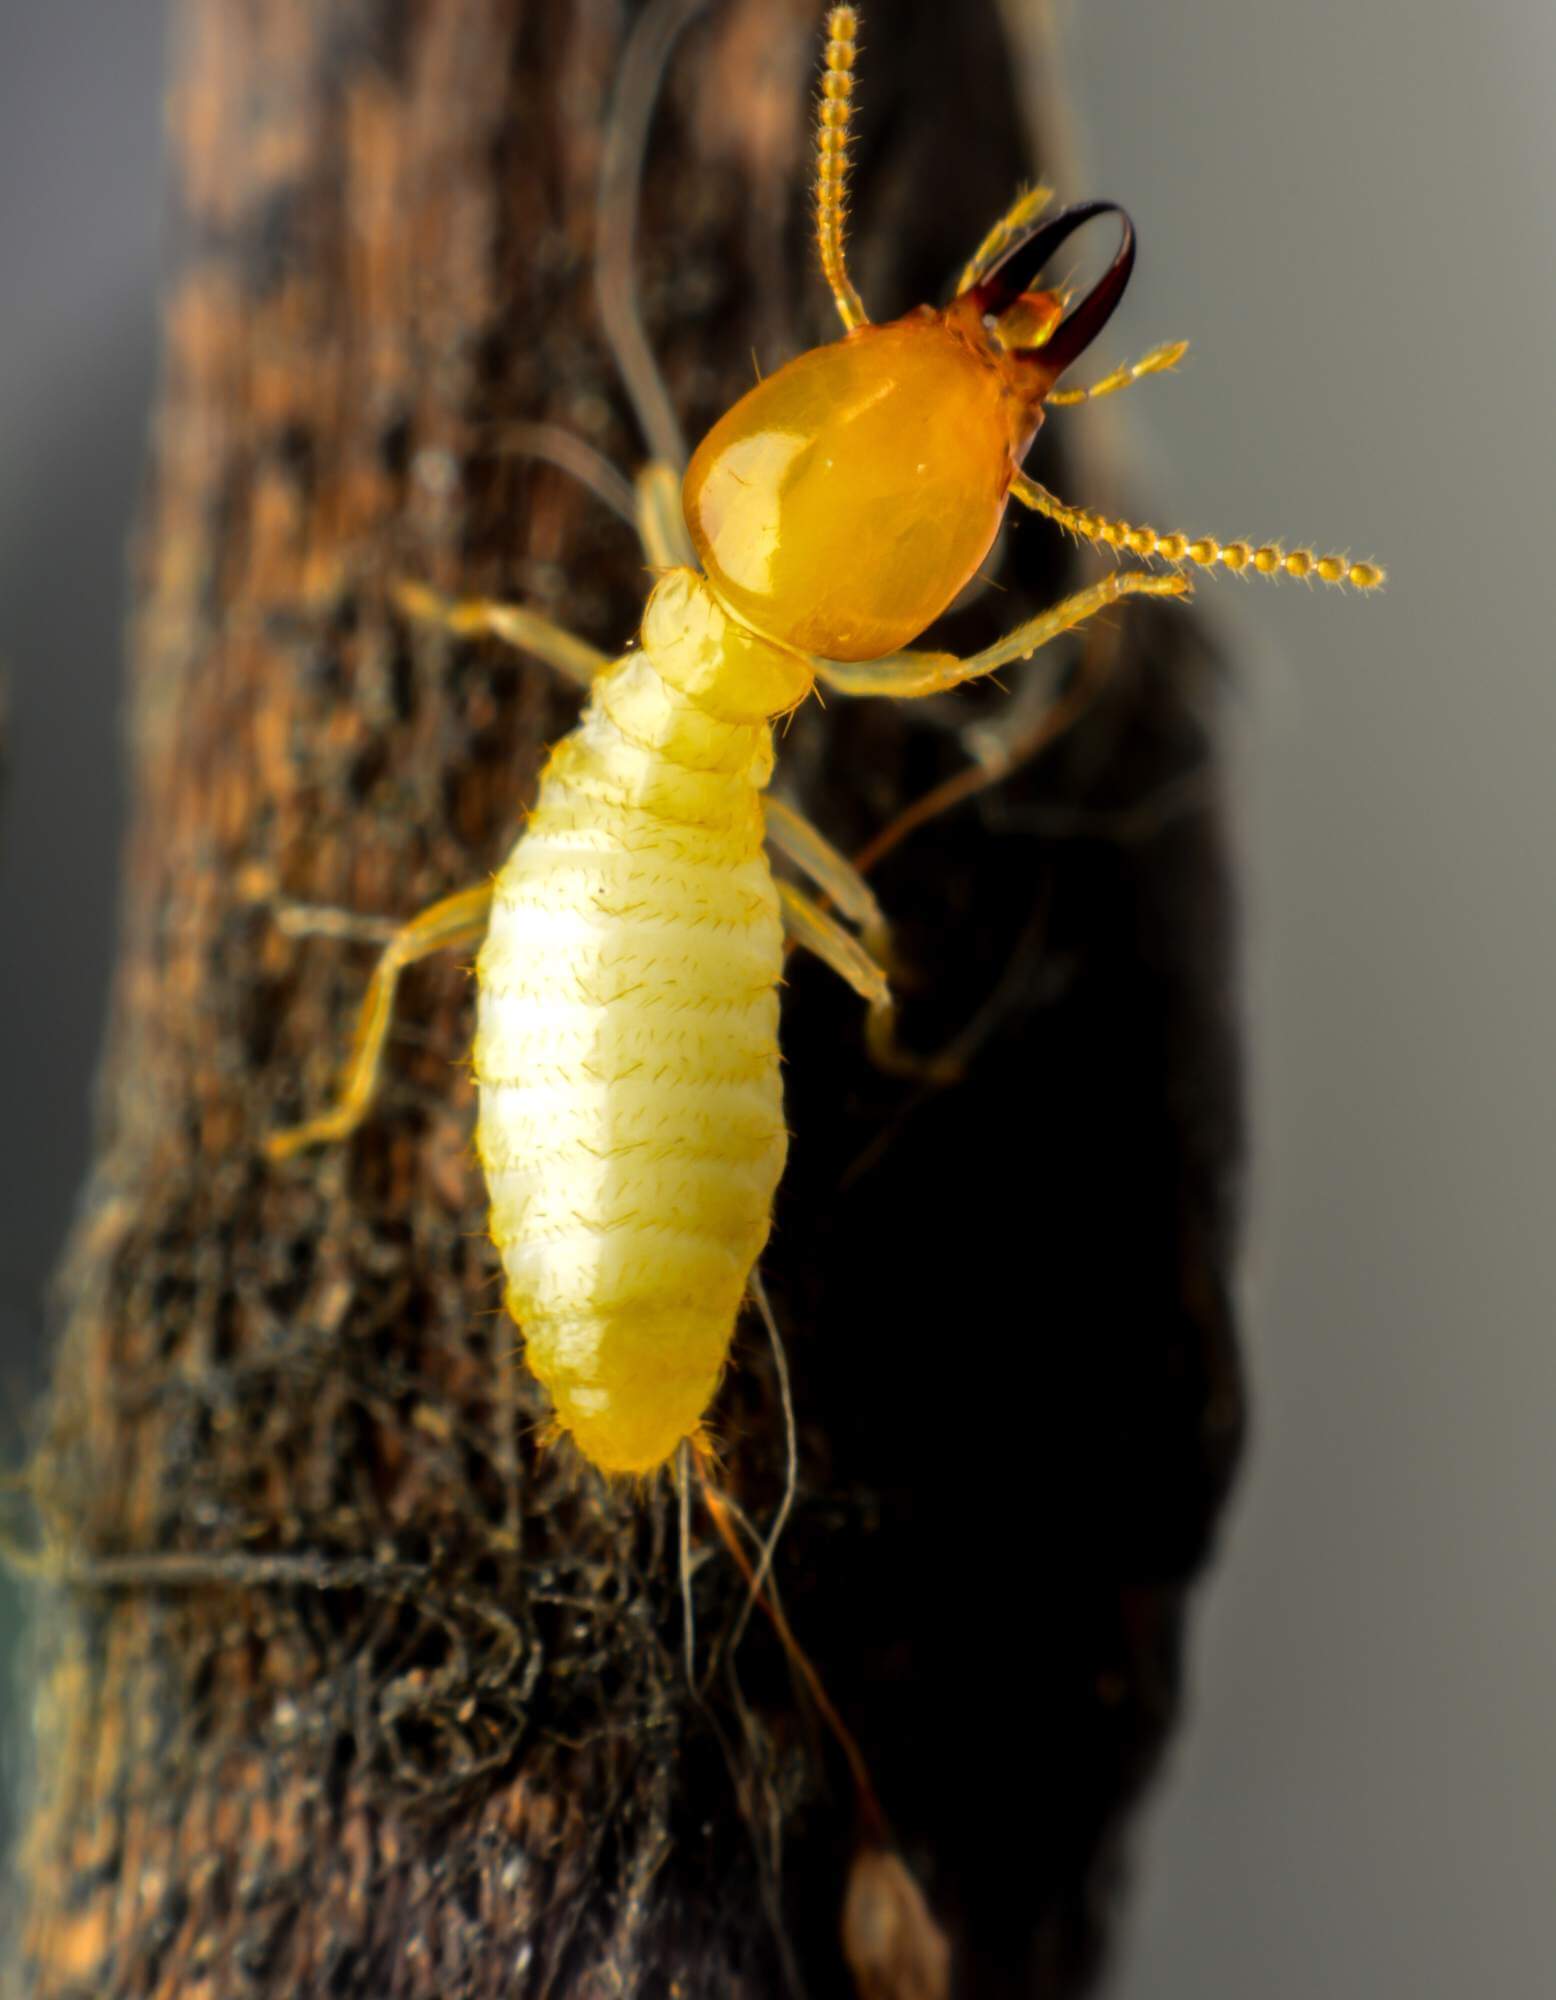 Subterranean termite walking on wood.